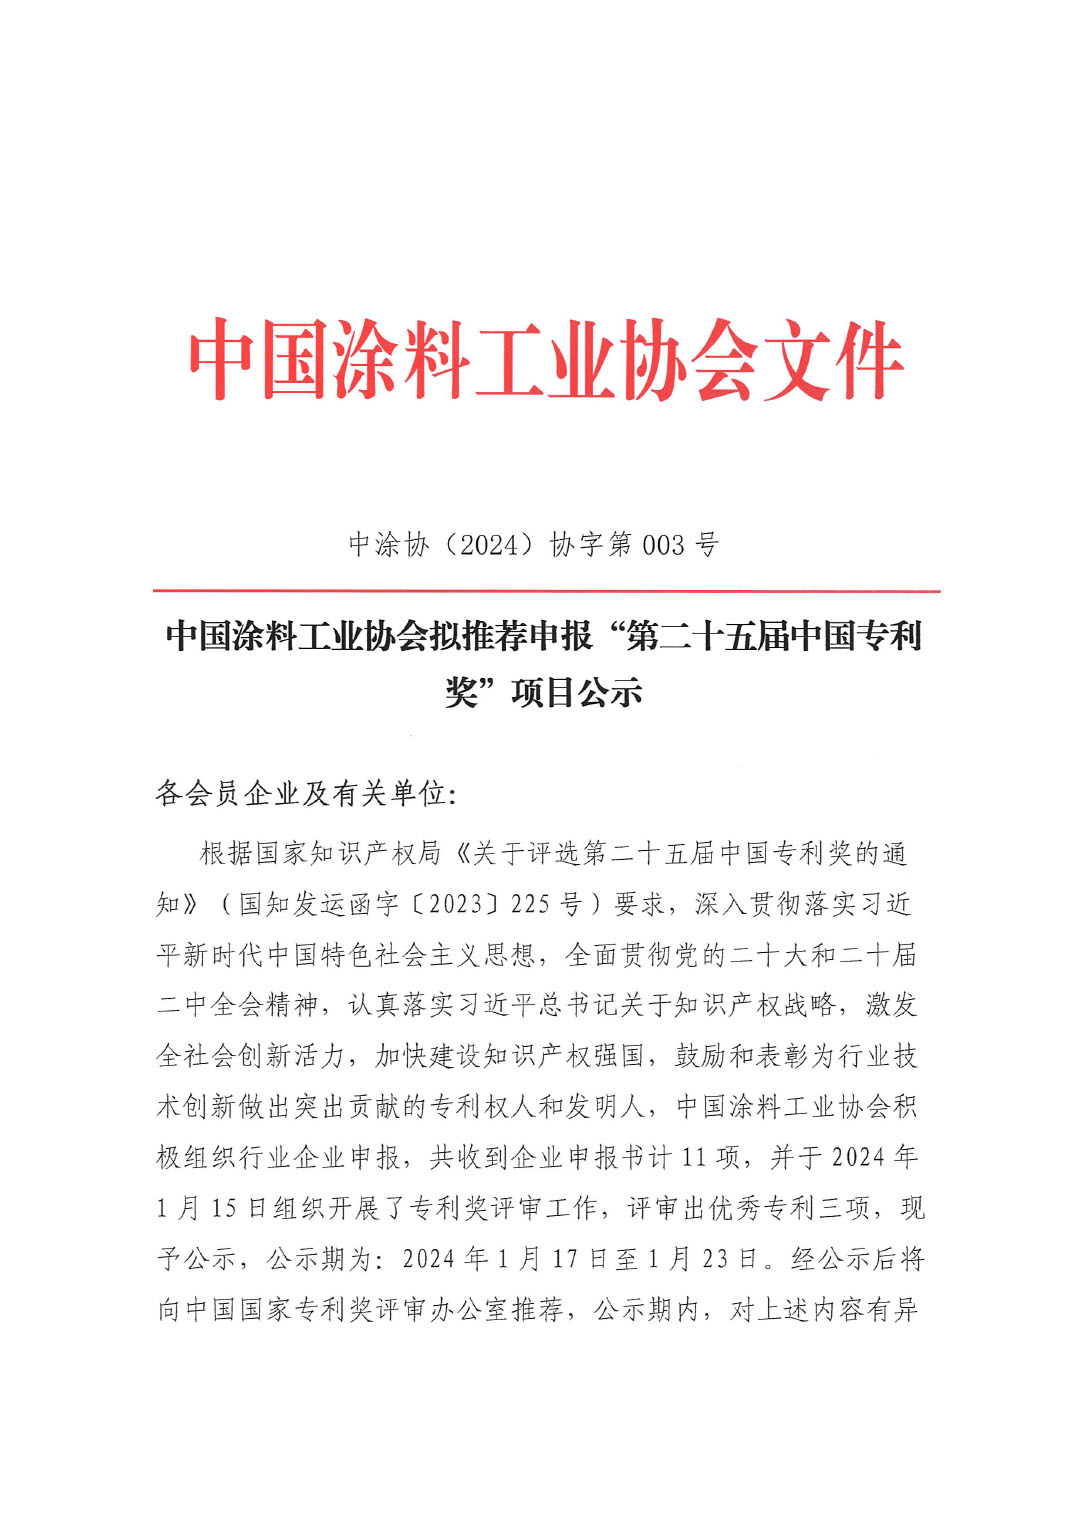 第二十五届中国专利奖项目公示文件（盖章版）-1